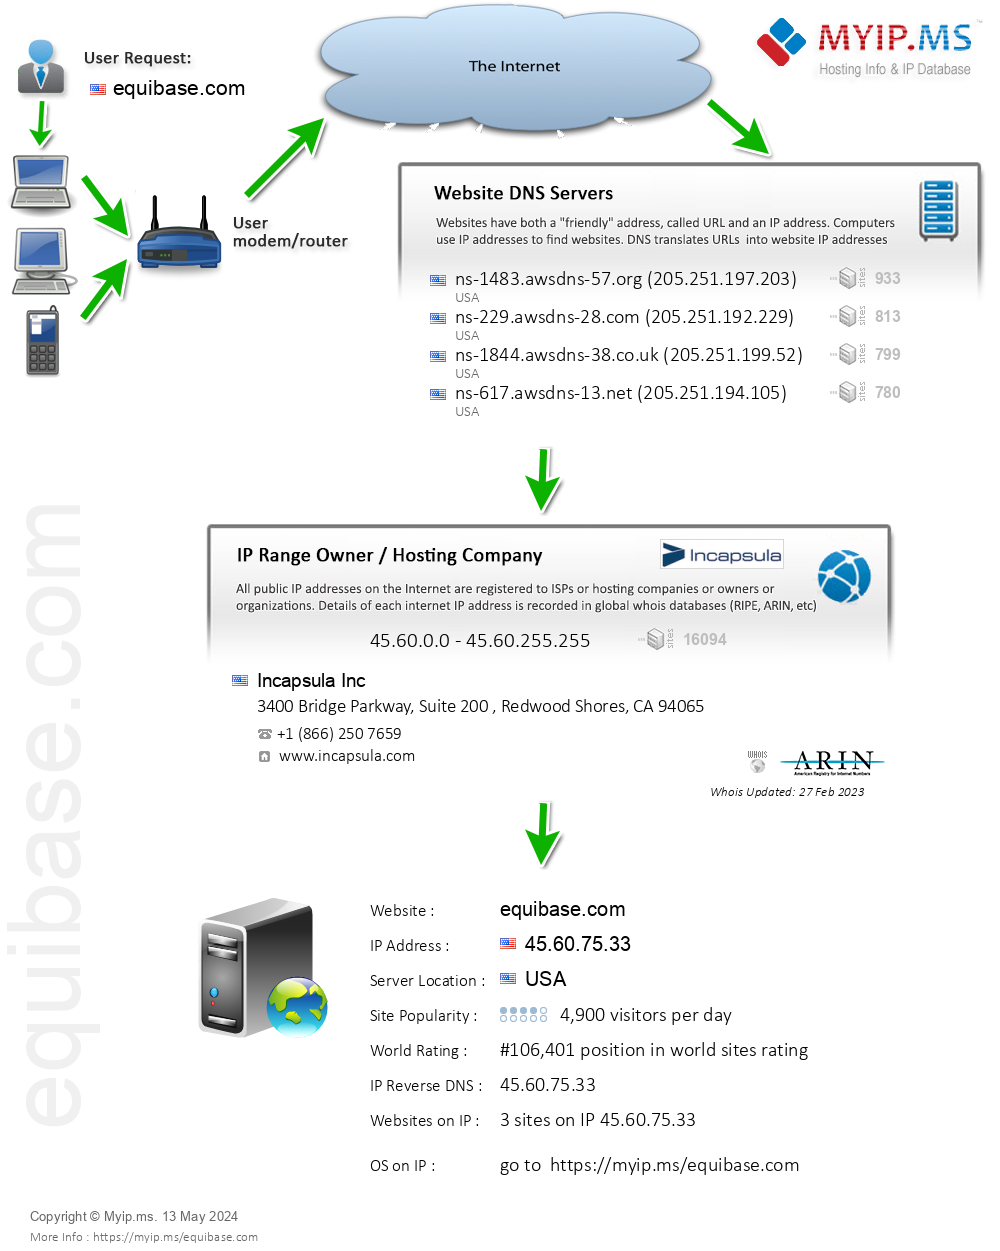 Equibase.com - Website Hosting Visual IP Diagram